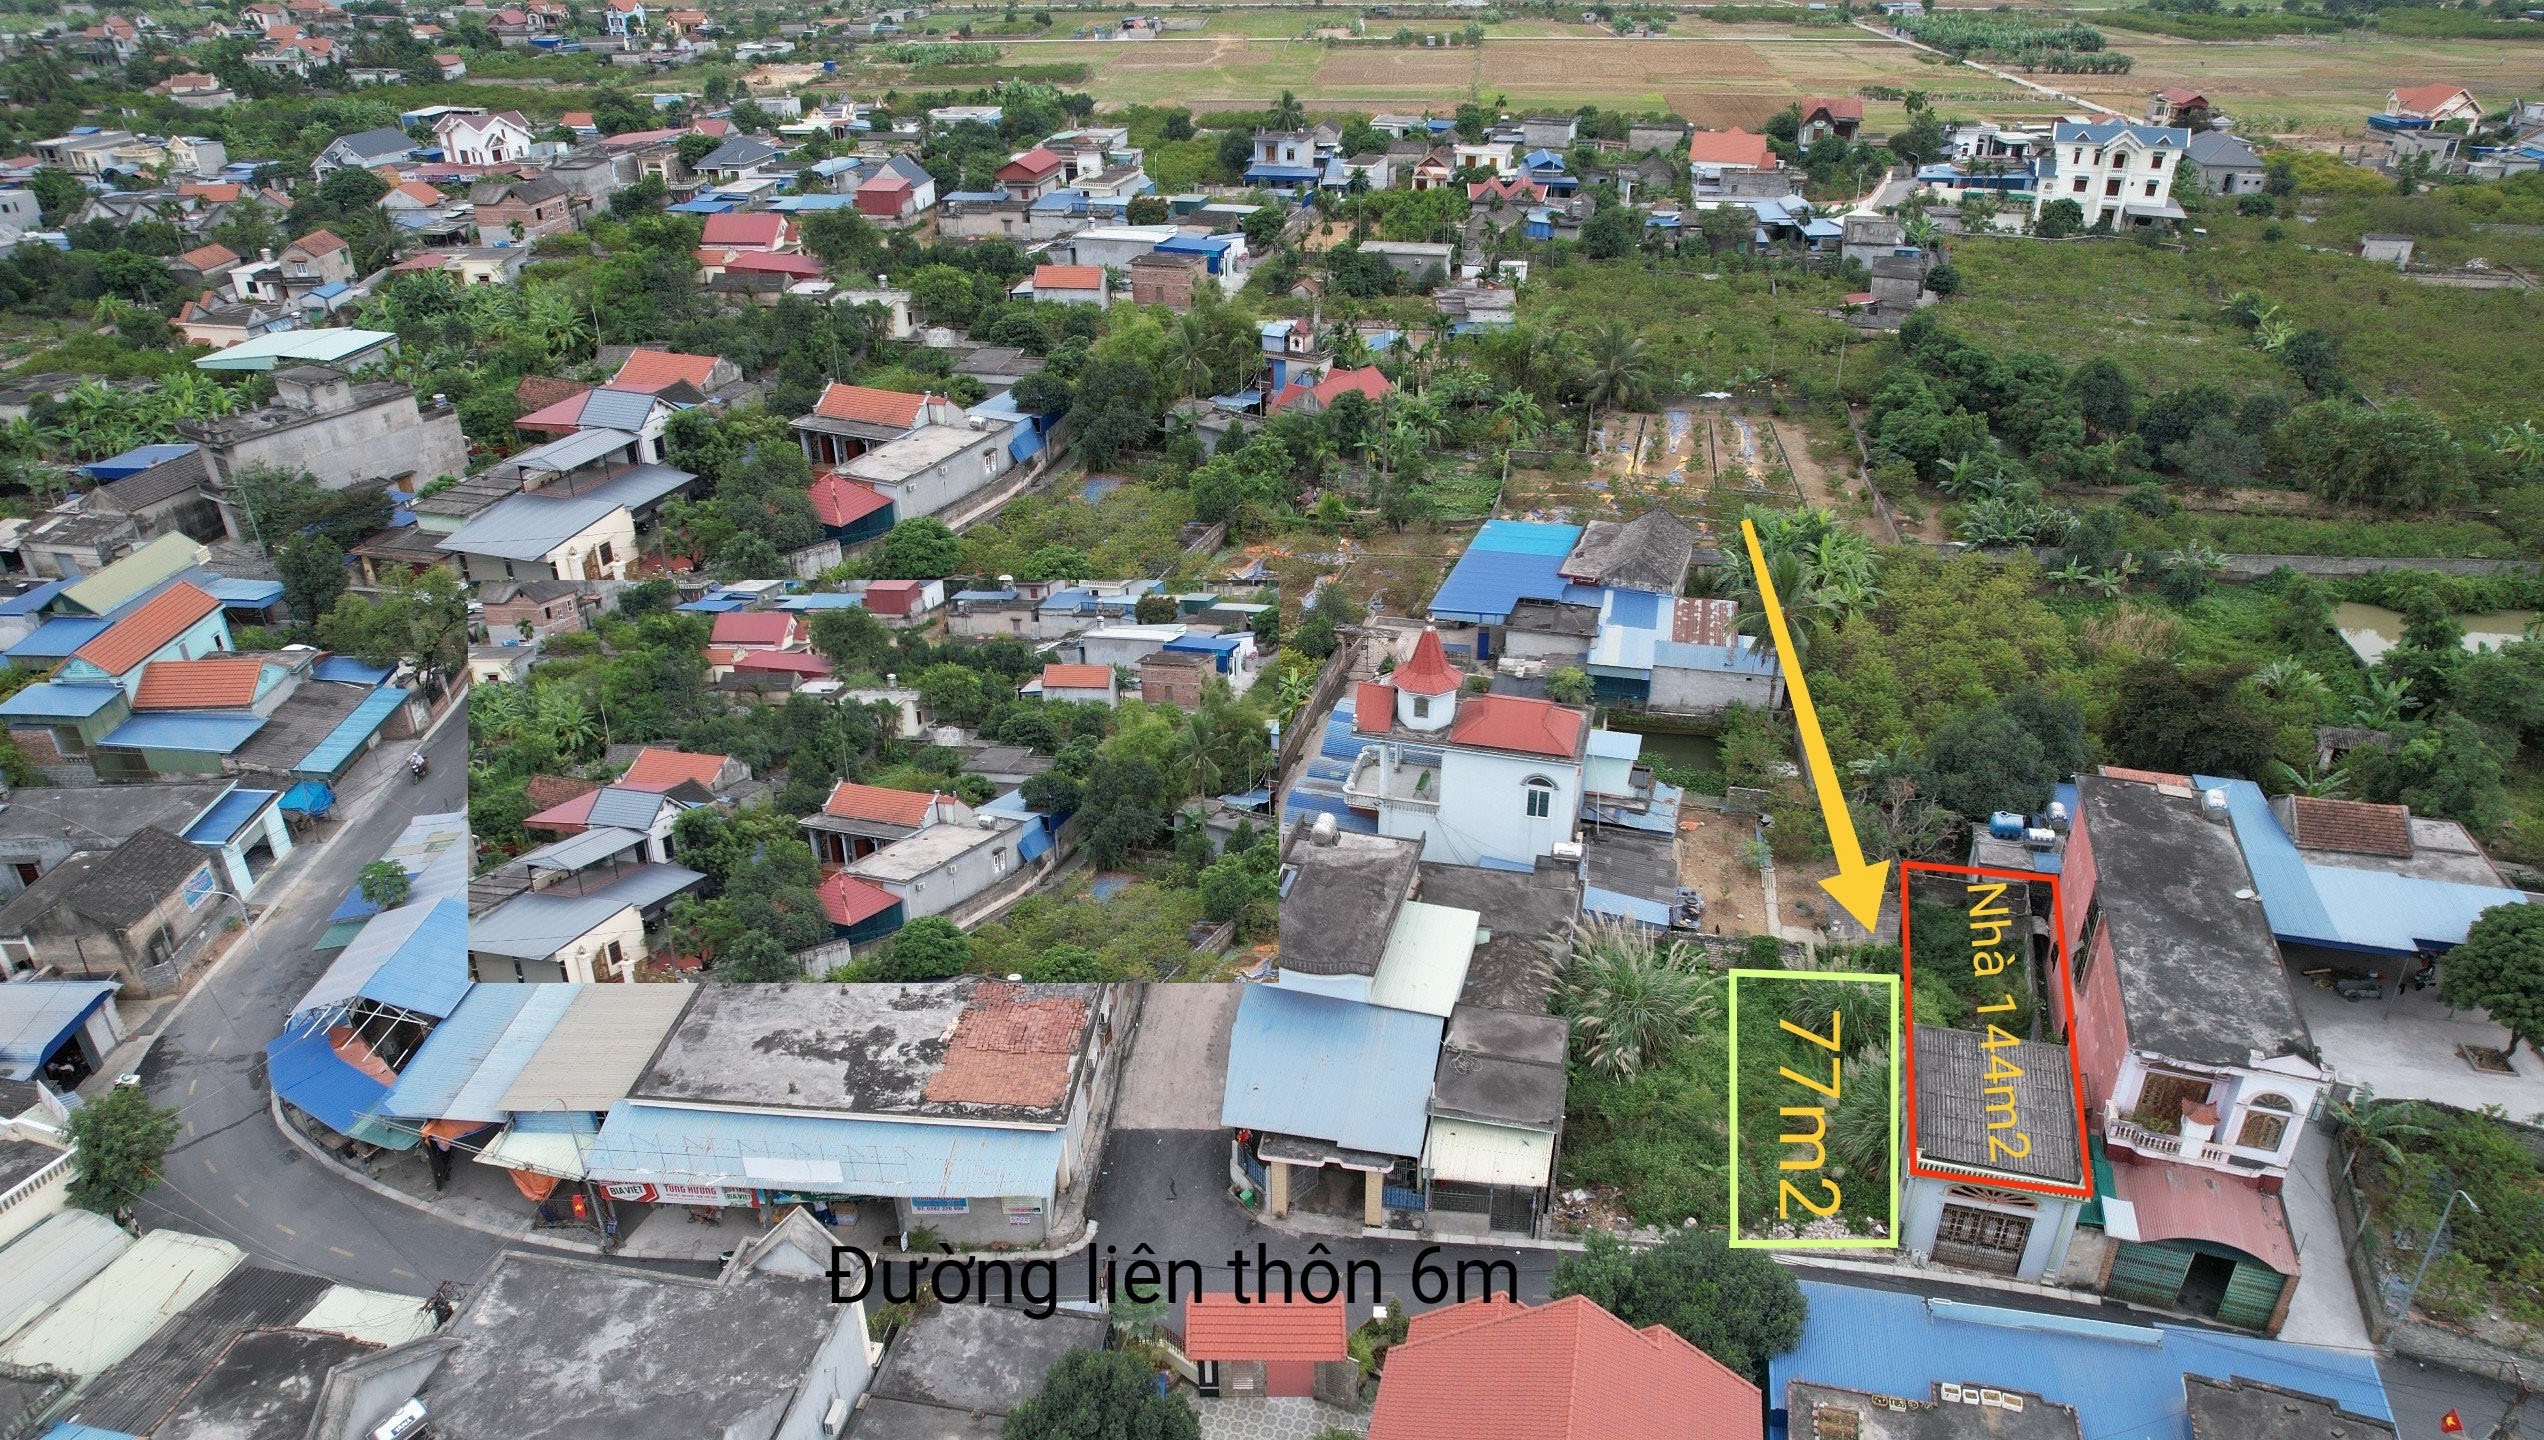  Bán đất mặt đường thôn 6m tại Lại Xuân, Thuỷ Nguyên, Hải Phòng.